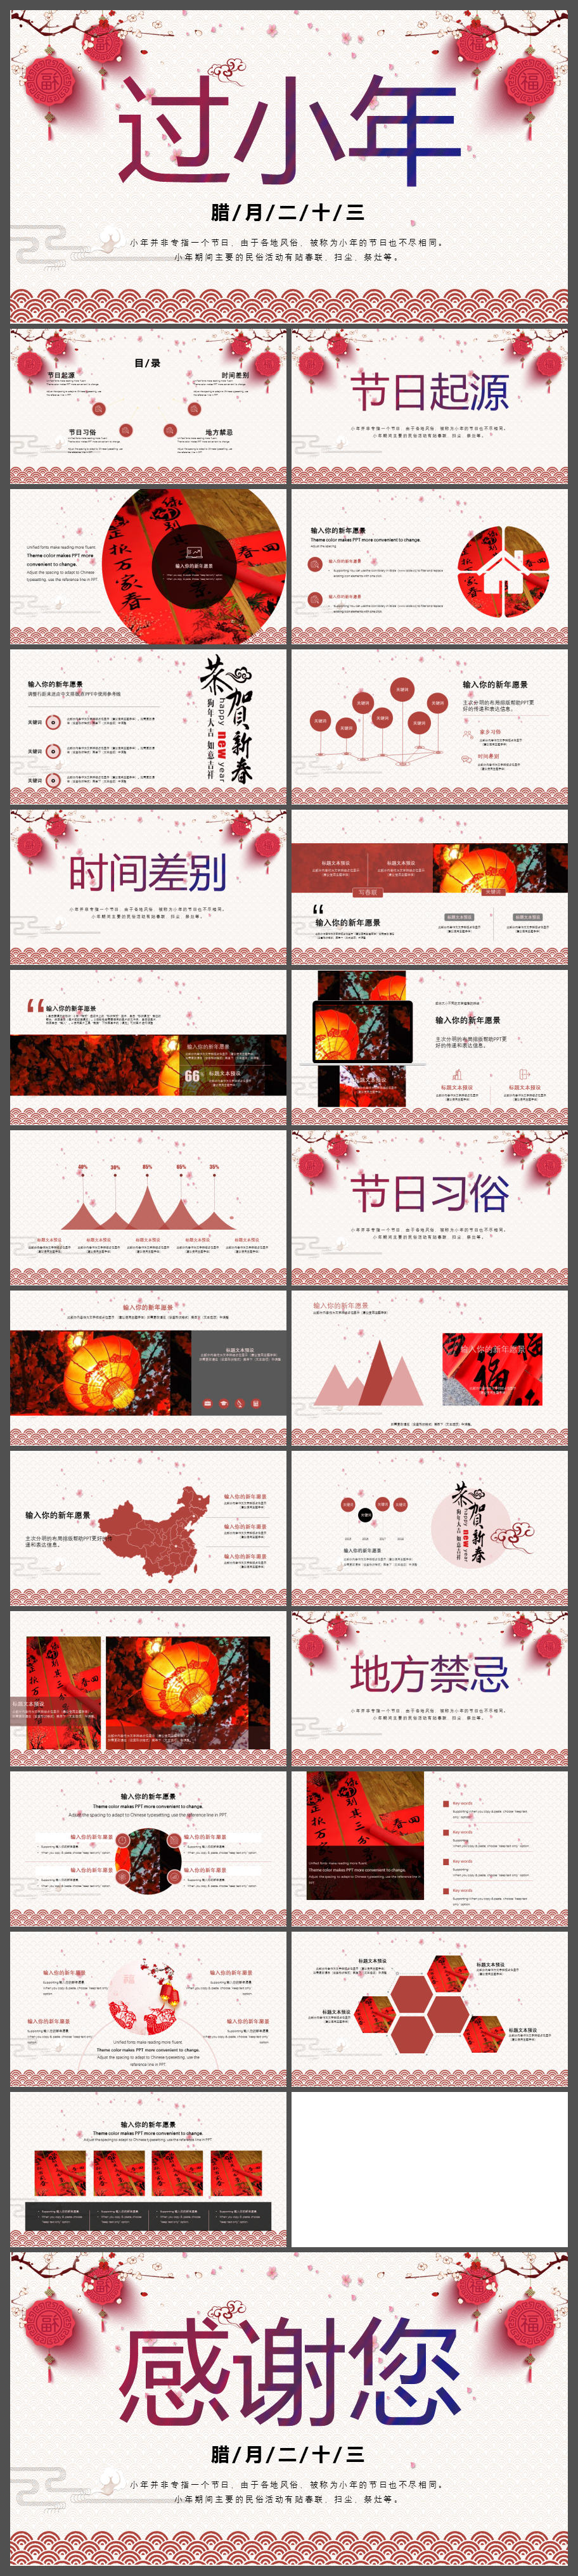 中国风传统节日过小年风俗介绍PPT模板